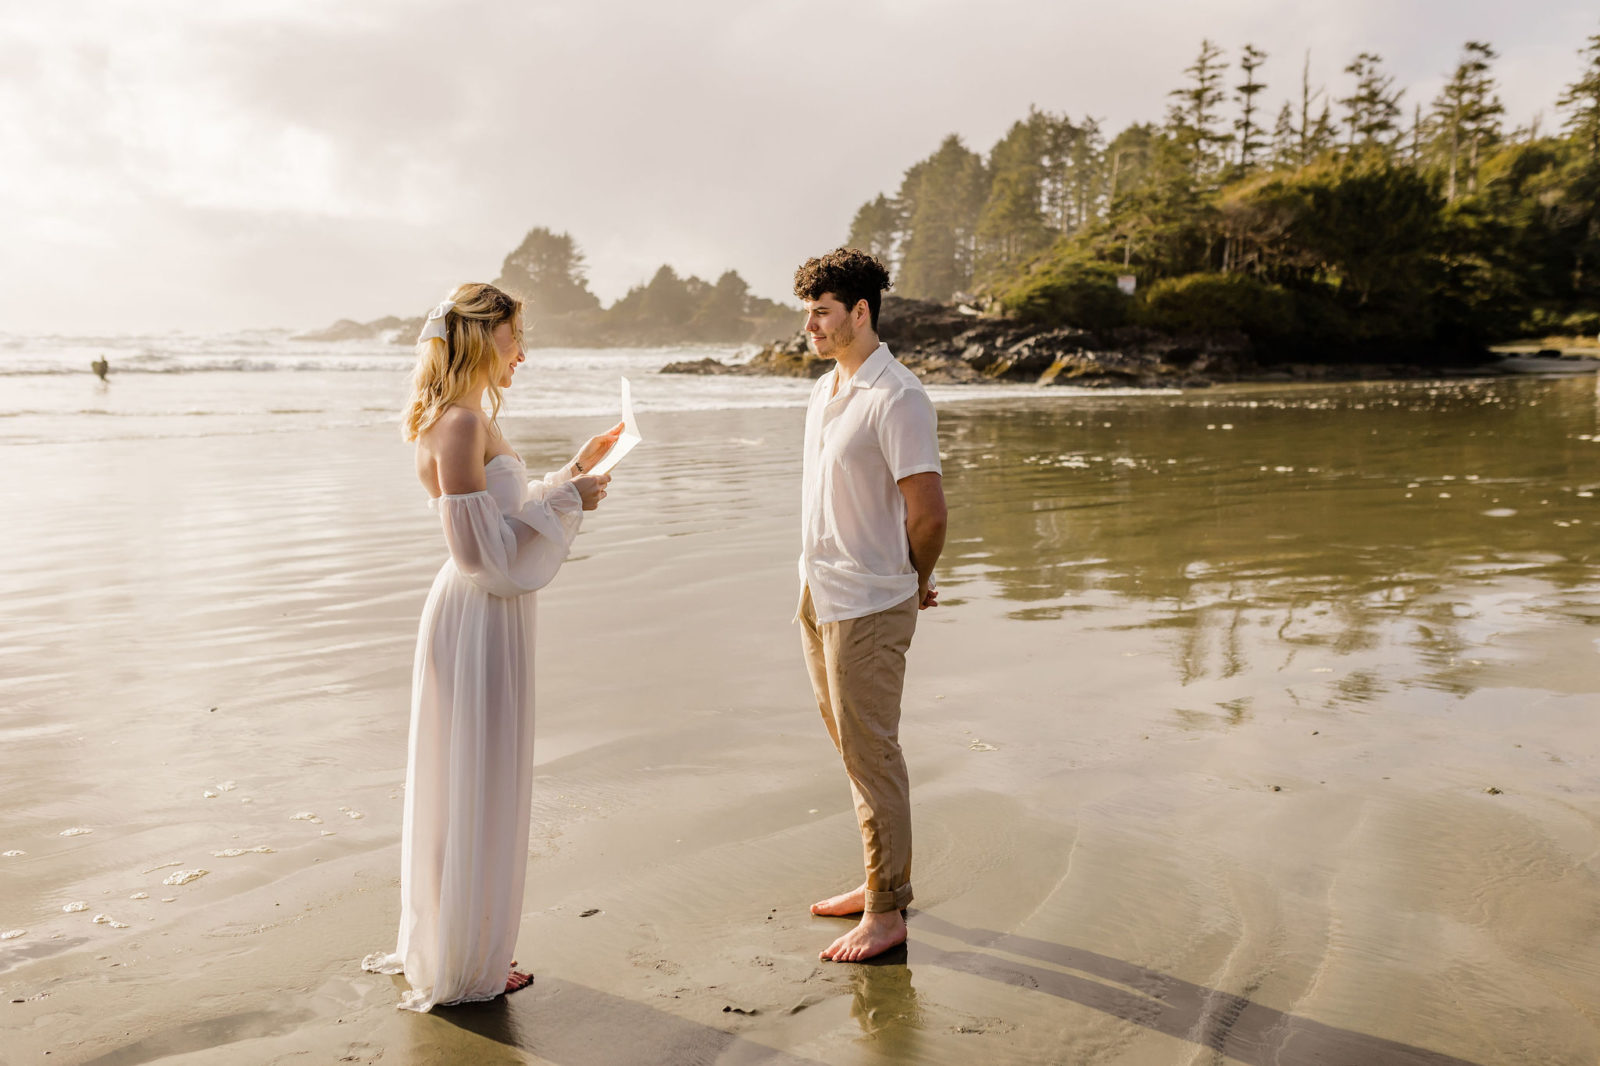 Proposal photography, romantic beach proposal, unique proposal ideas
